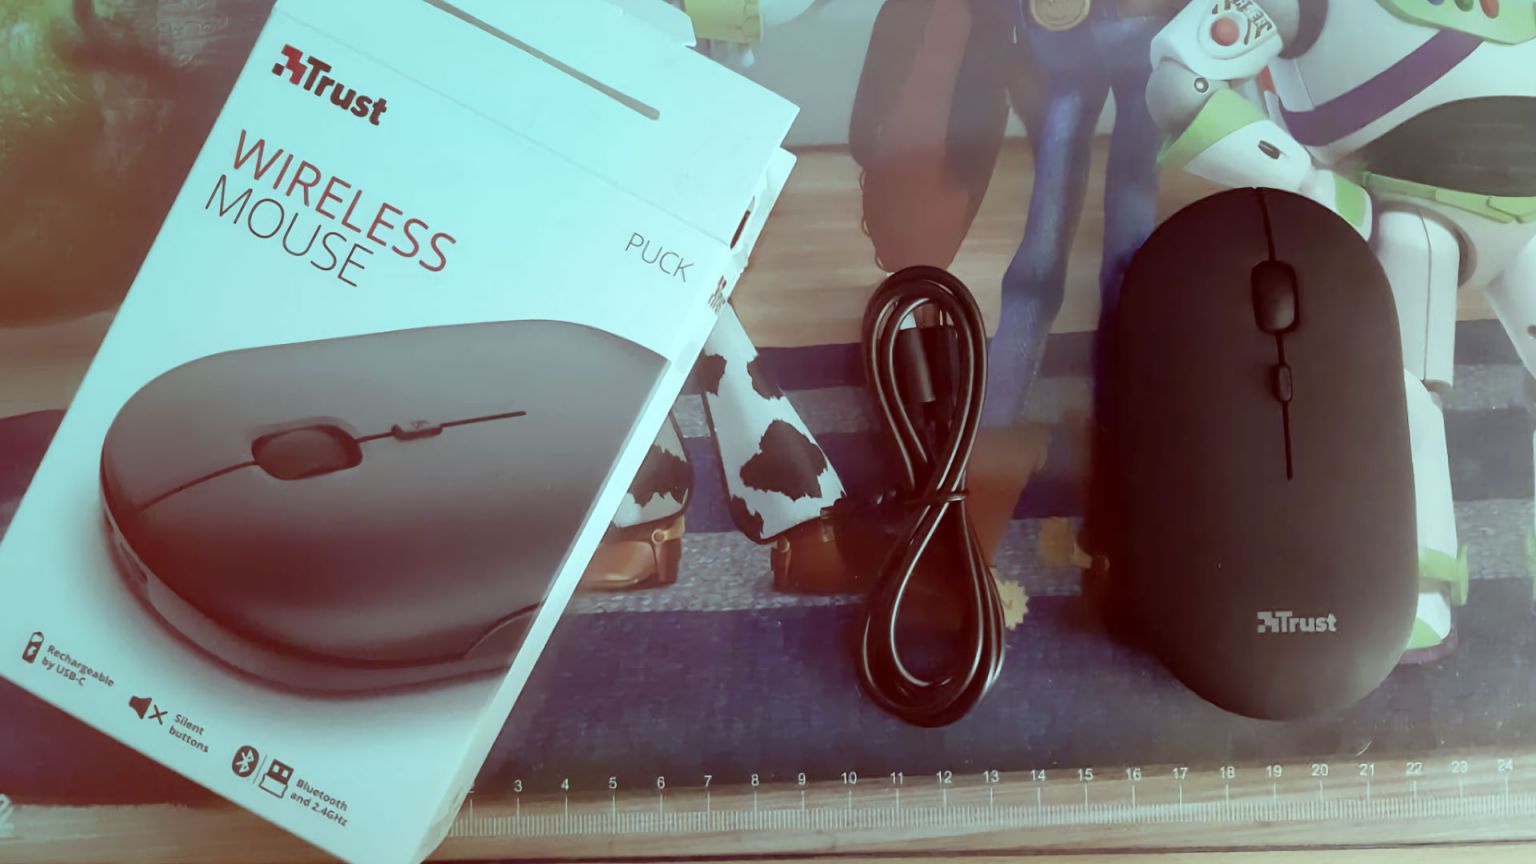 En estas últimas semanas he estado probando el mouse Puck Pro Wireless. Un ratón creado por Trust, que consigue satisfacer las necesidades de cualquier usuario.